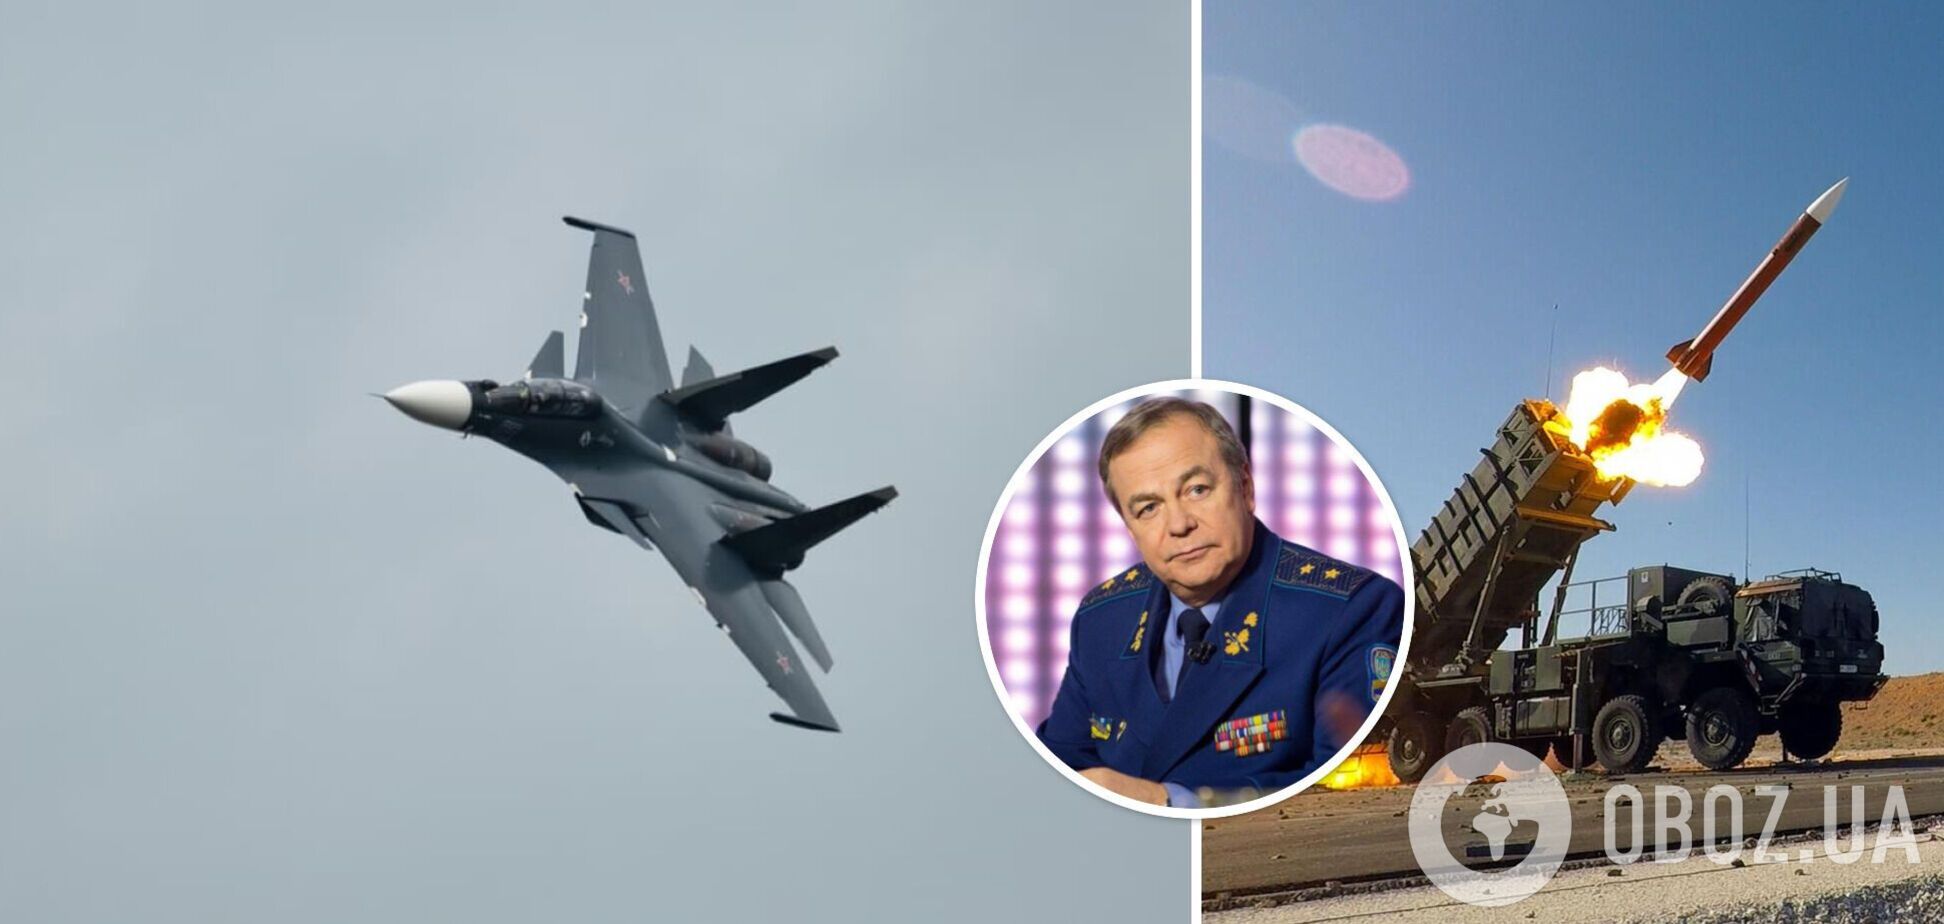 Игорь Романенко высказался о работе украинской противовоздушной и противоракетной обороны